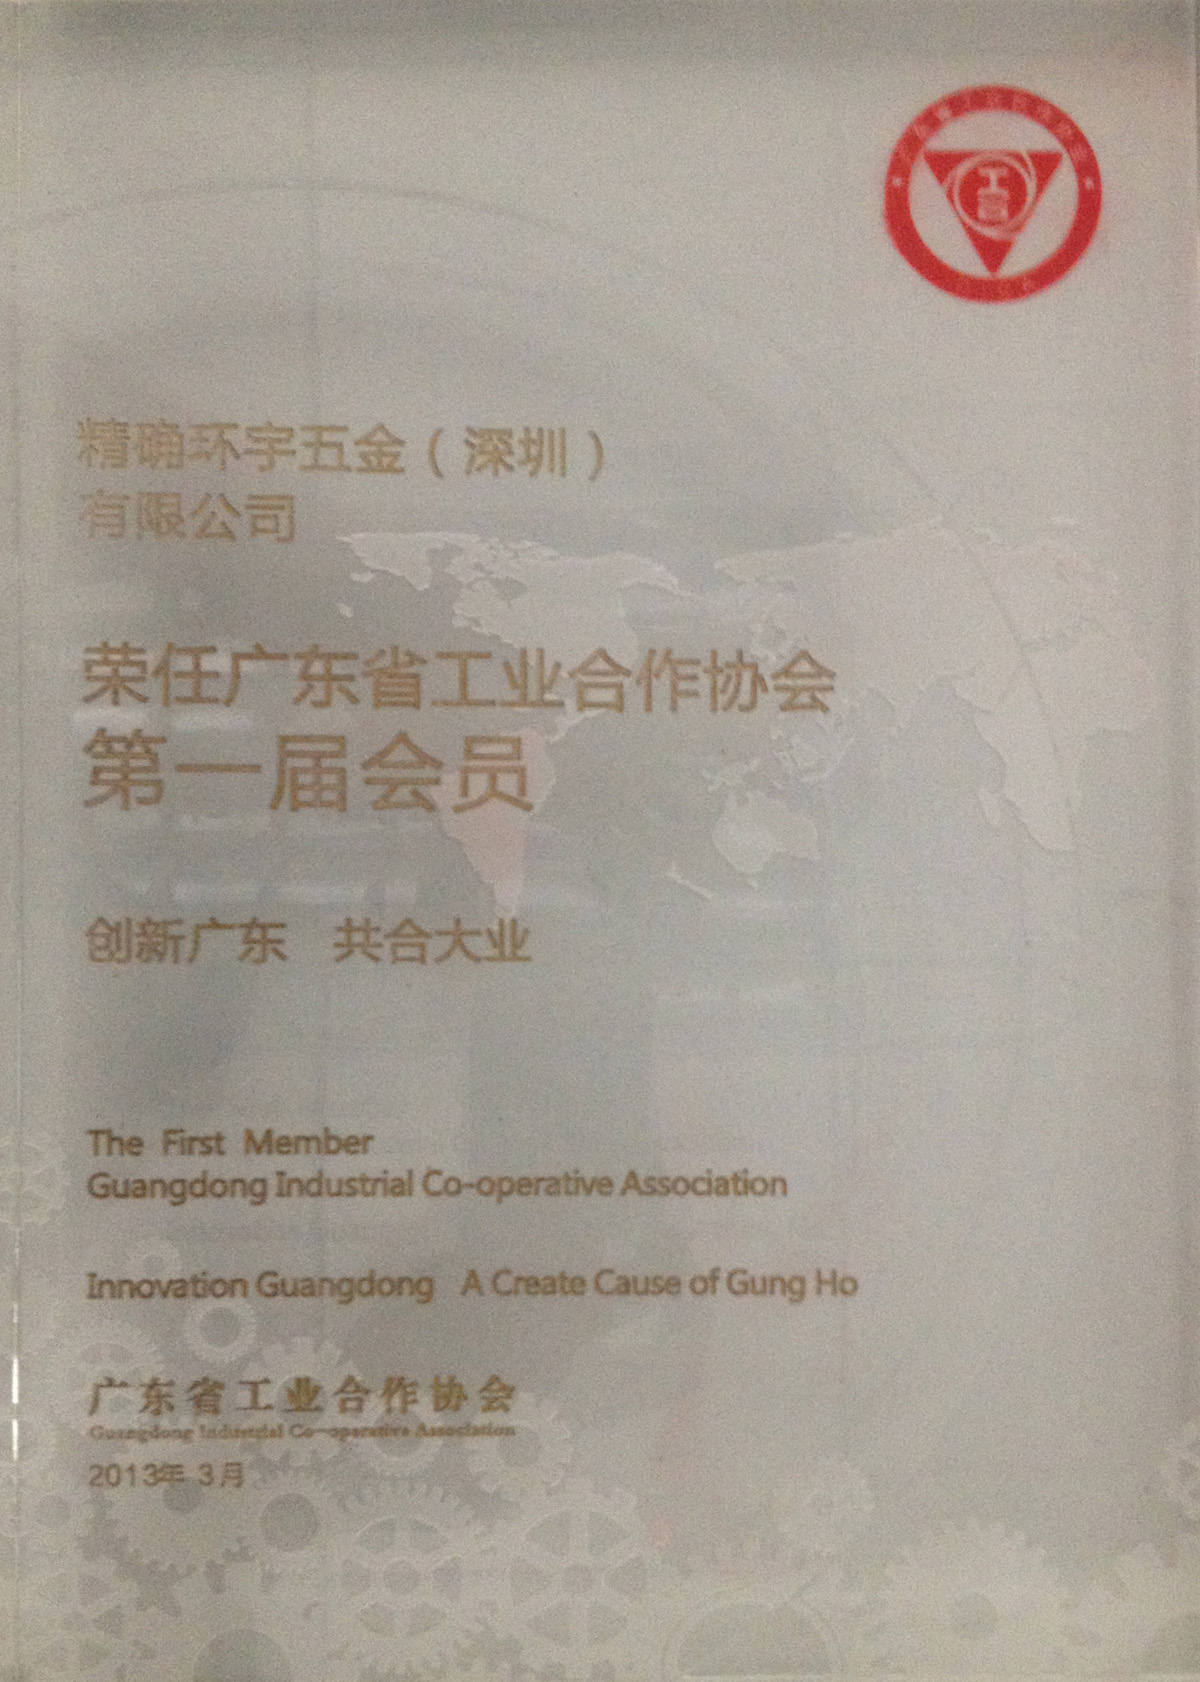 加入“广东工业合作协会”成为正式会员